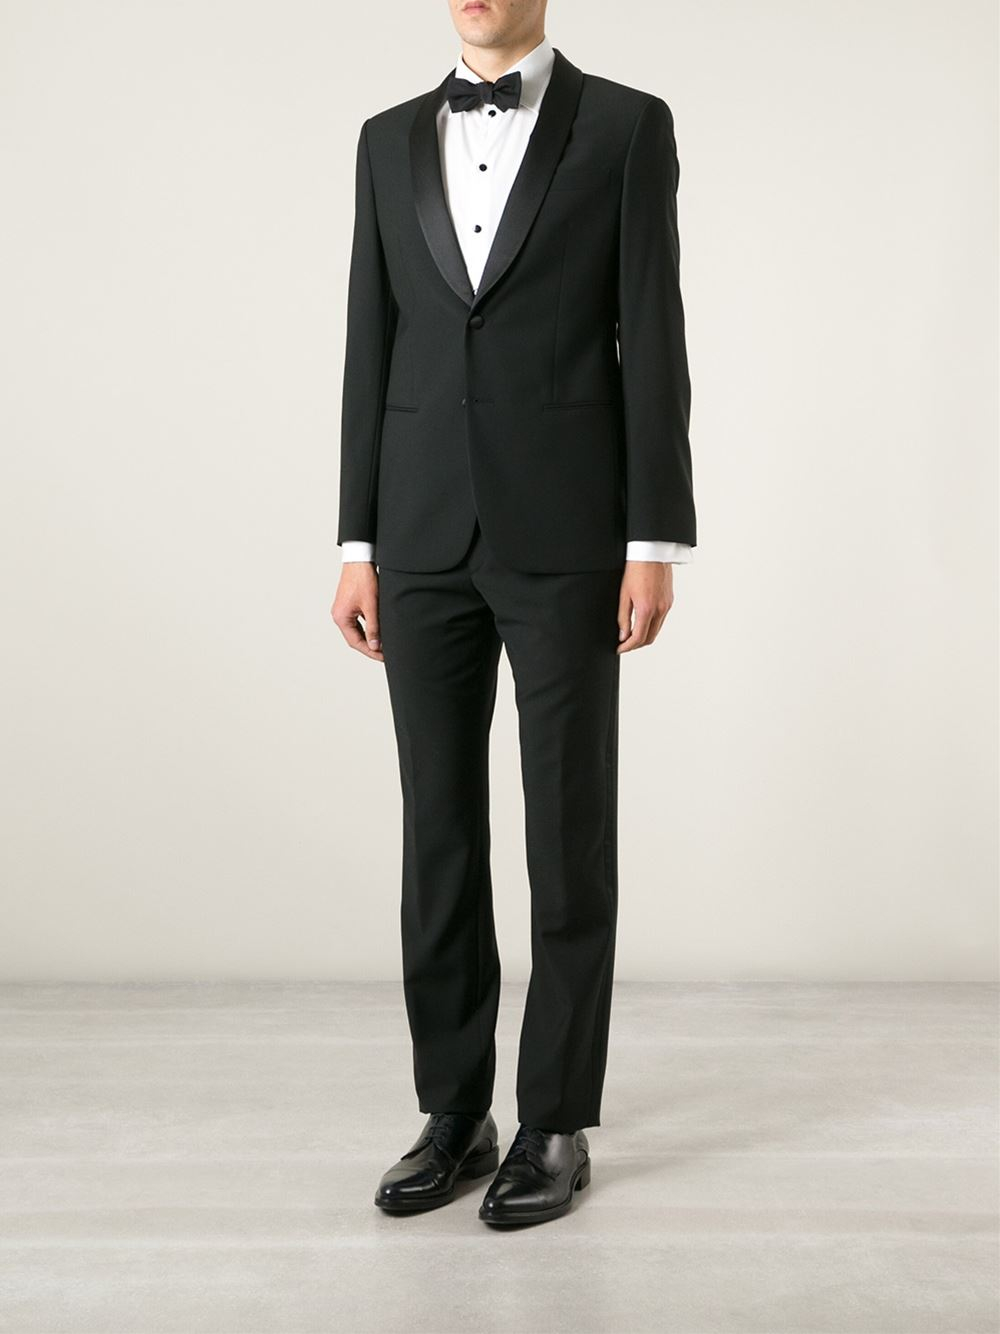 Lyst - Giorgio Armani Classic Tuxedo in Black for Men